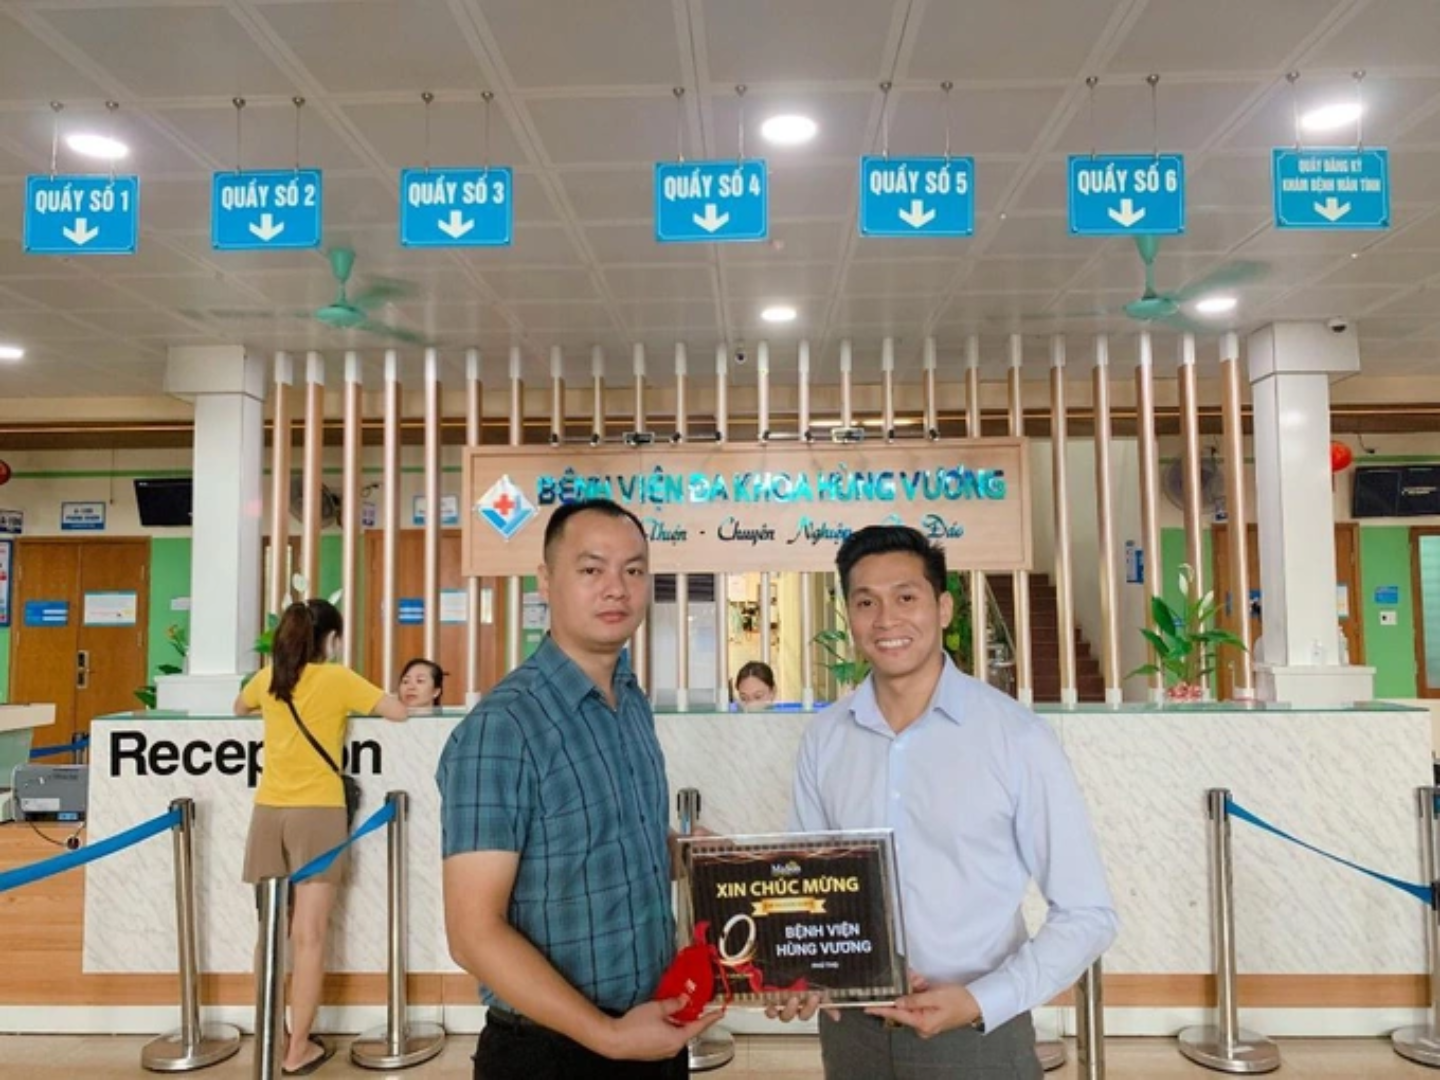 Ông Trần Anh Tuấn (áo trắng) - CEO Mason Việt Nam trực tiếp trao quà cho đại diện BV Hùng Vương sau chương trình quay số may mắn tri ân khách hàng của Mason Việt Nam.